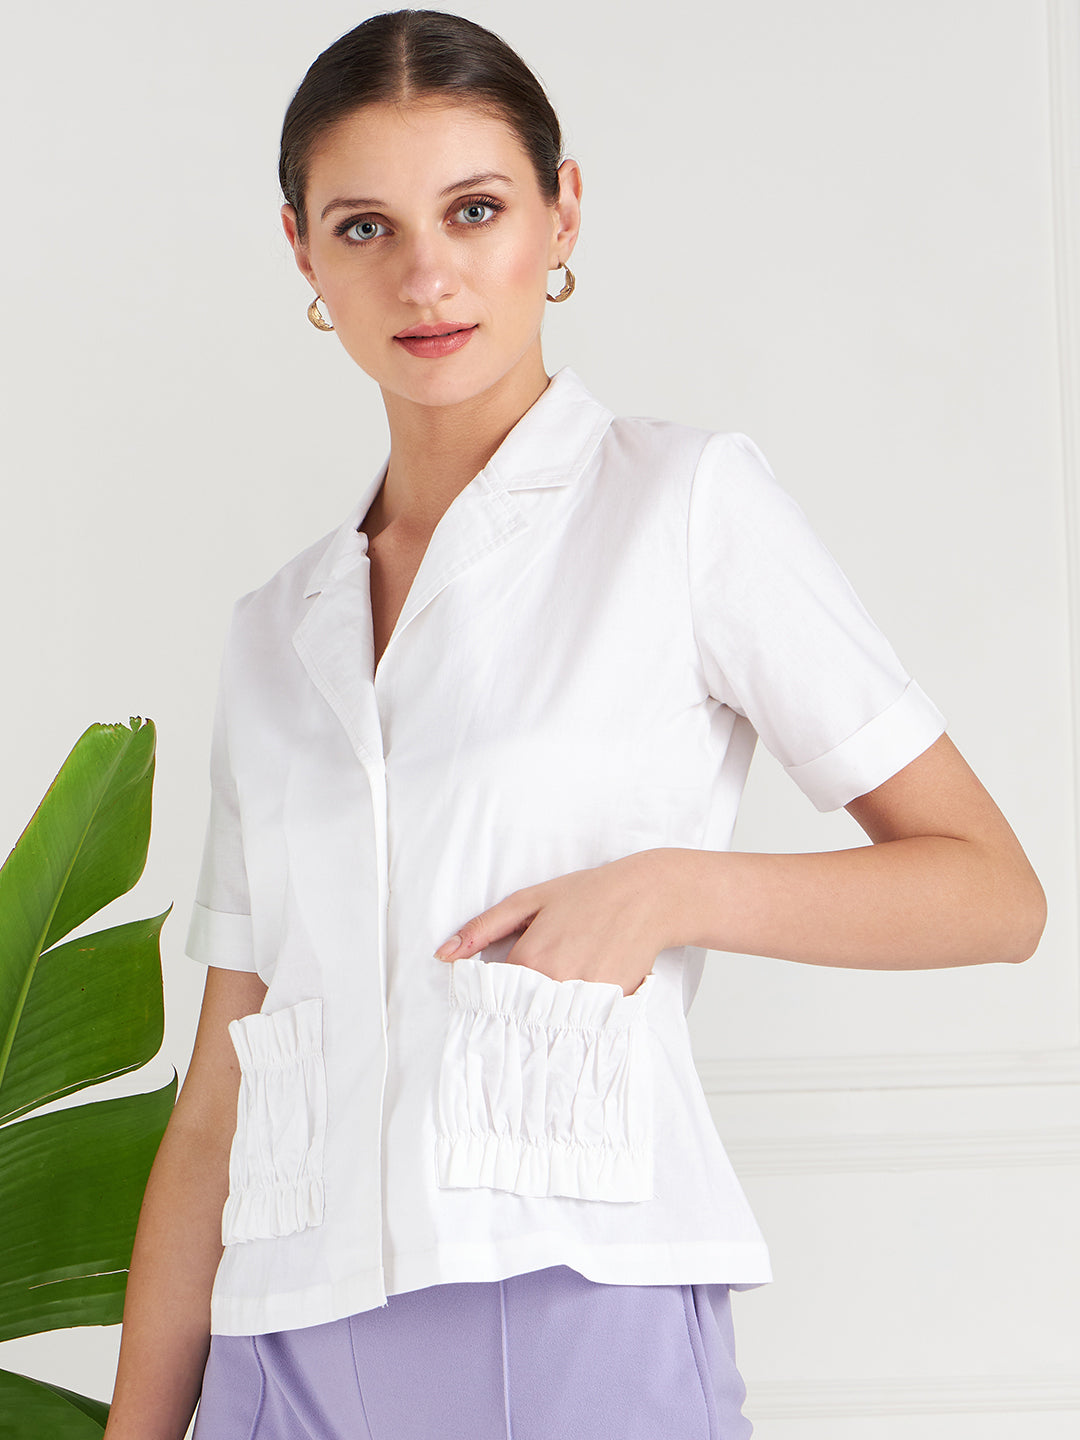 Athena White Lapel Collar Shirt Style Cotton Top - Athena Lifestyle